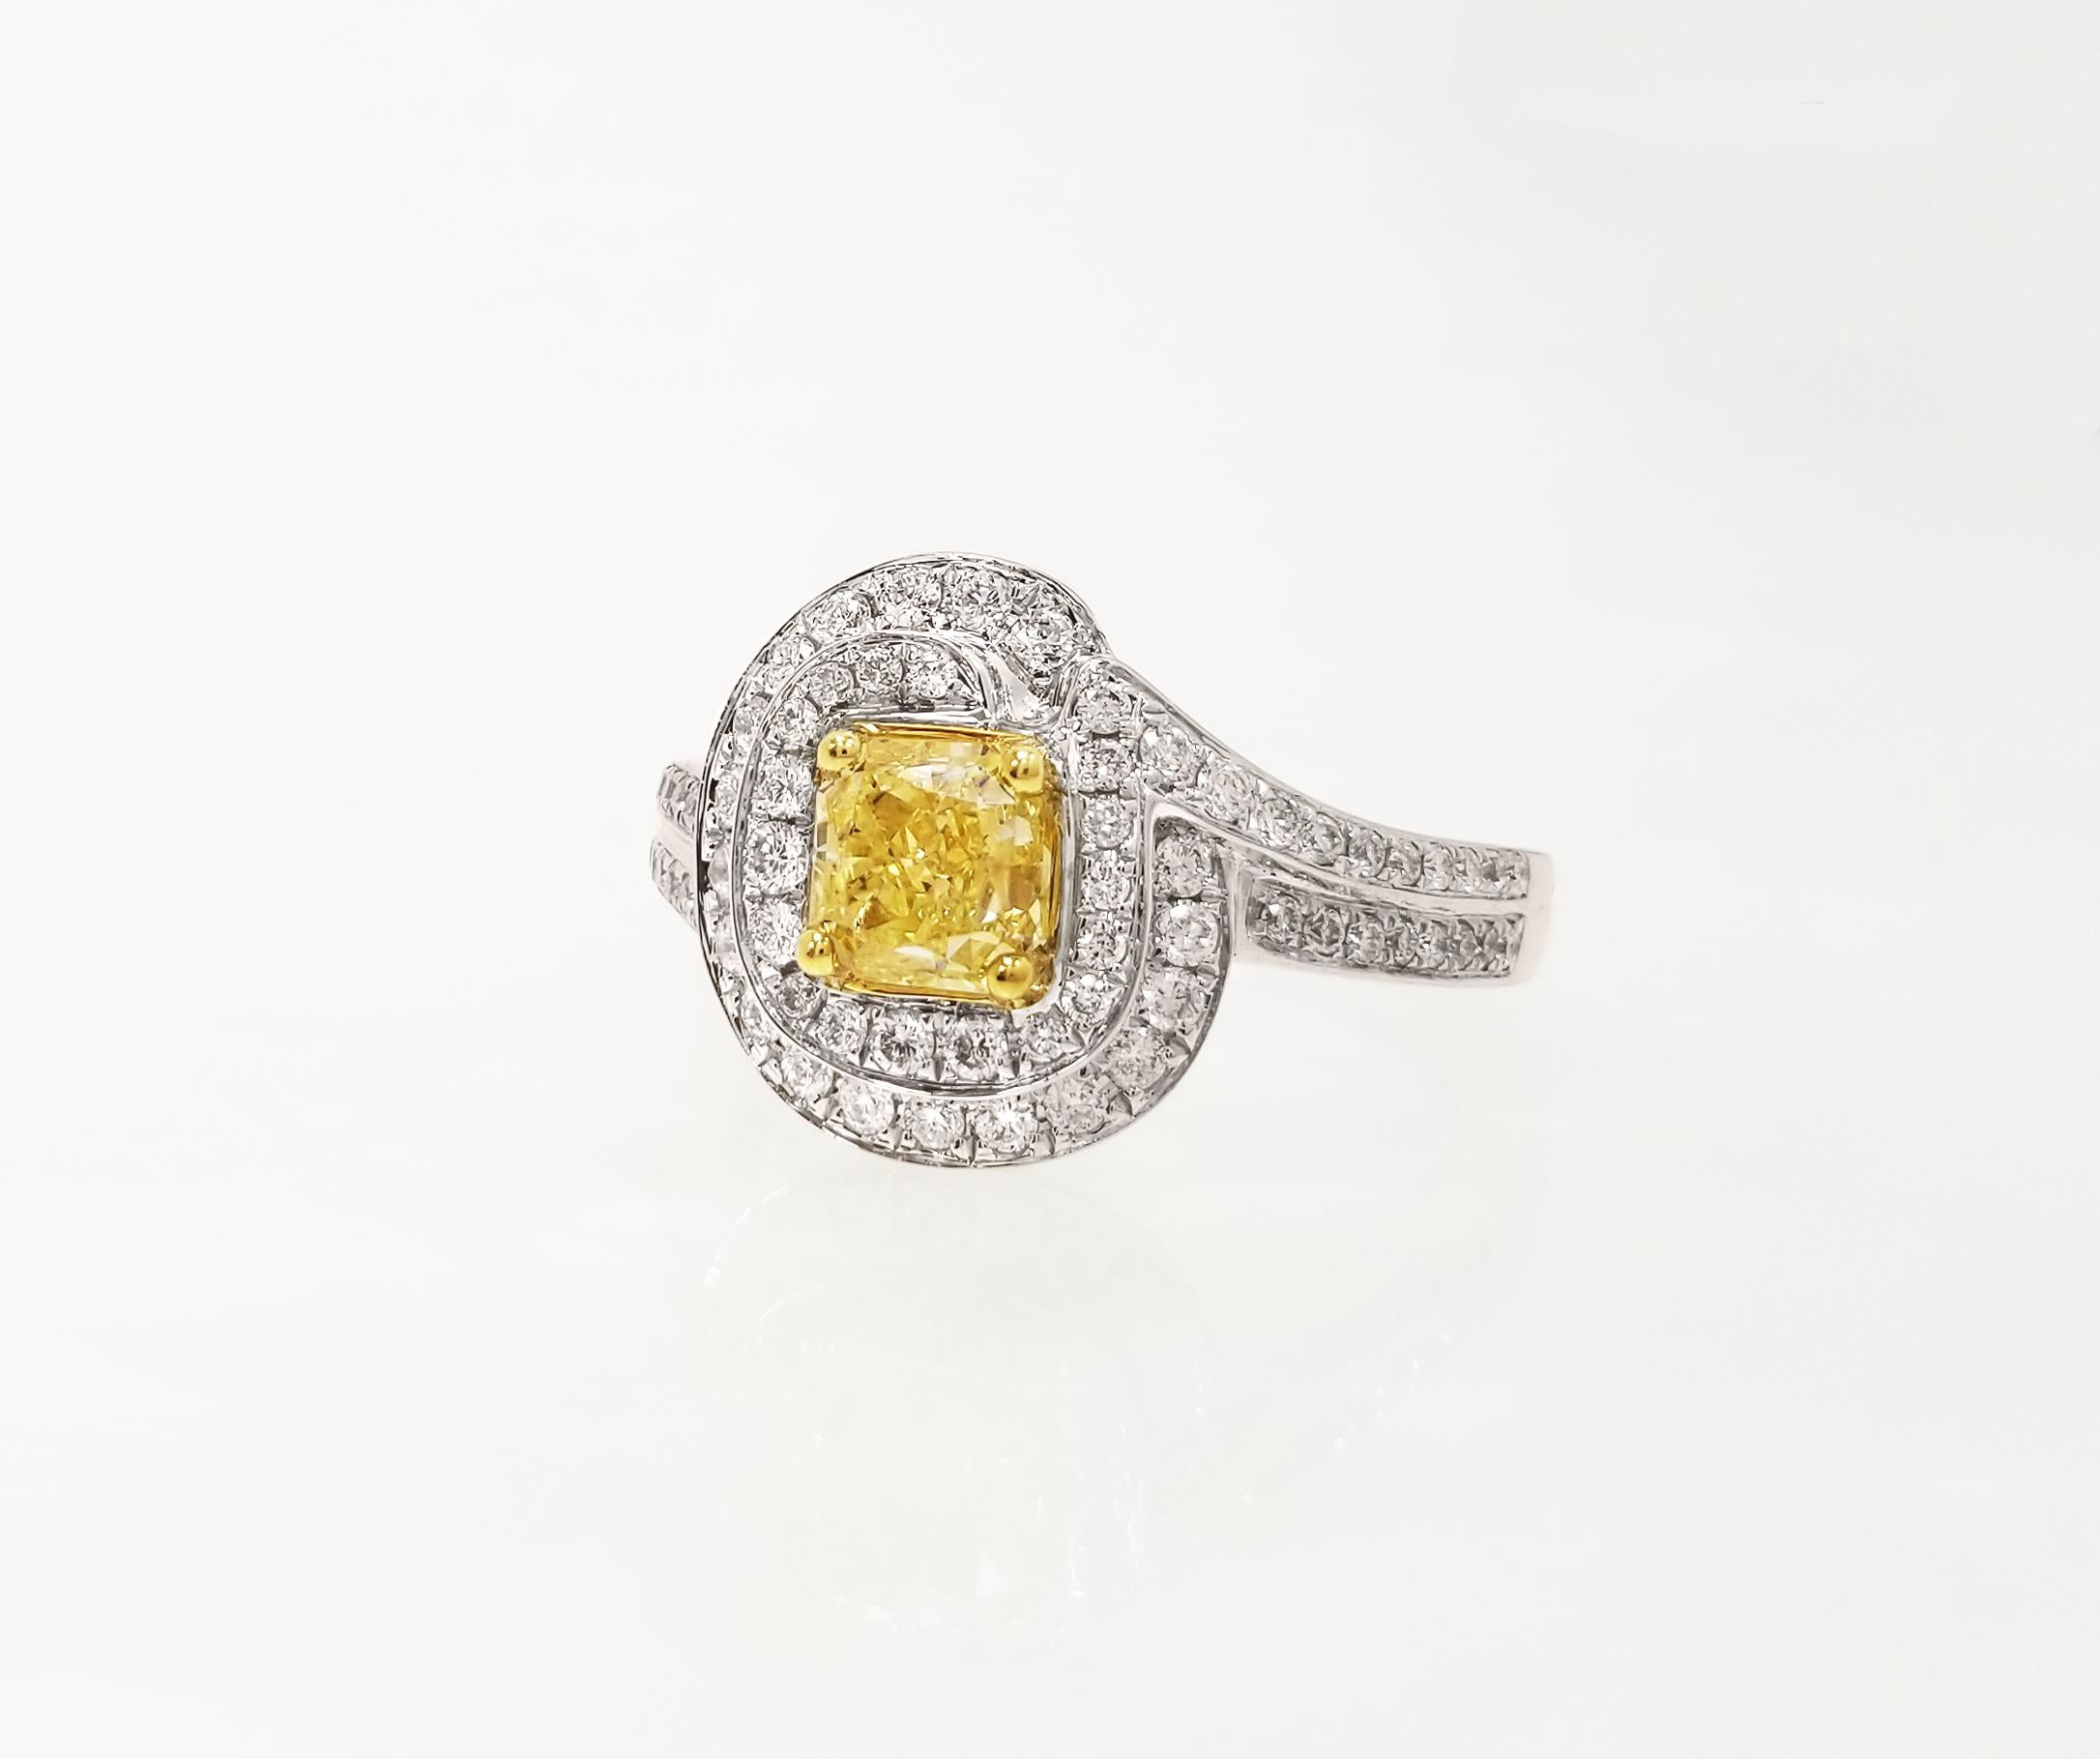 GIA-zertifiziert Natural Fancy Yellow 1,05 Karat Radiant-Schliff VVS2 Diamant Verlobungsring auf 18k Weißgold Band. Mit 2 Reihen runder weißer Brillanten in einem spiralförmigen Halo-Design - perfekt als Statement oder Verlobungsring. Die Größe des